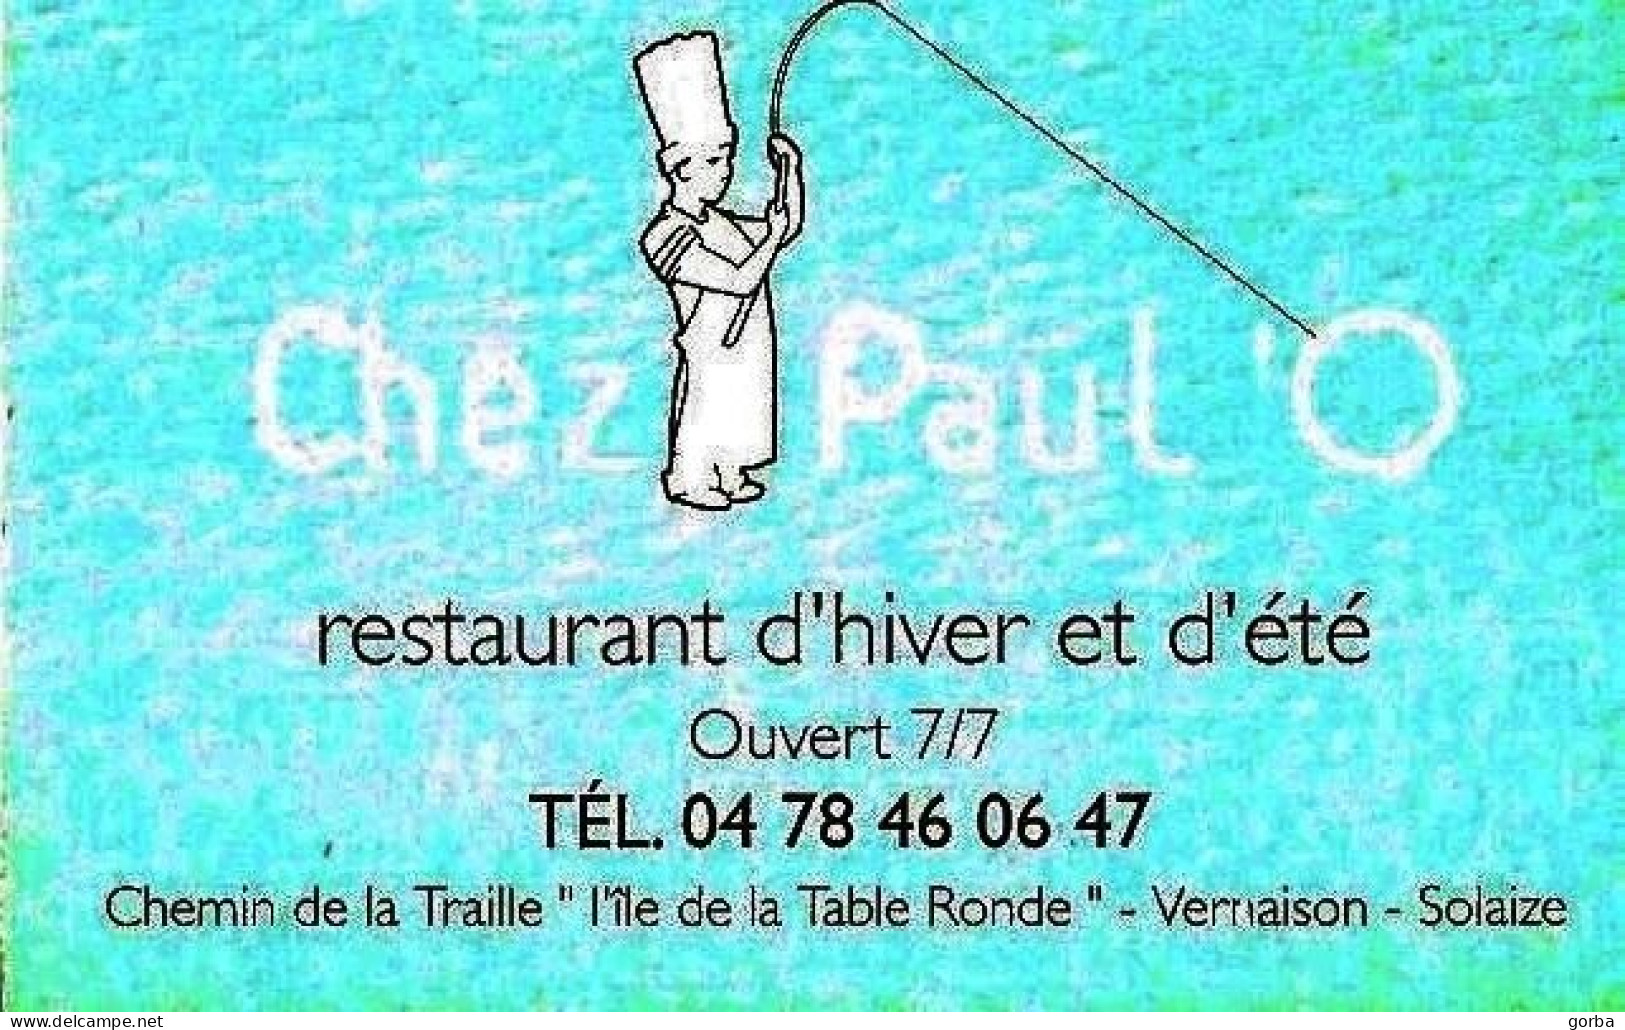 *Carte Visite Restaurant - Chez PAUL ' O à Vernaison-Solaize (69) - Cartoncini Da Visita